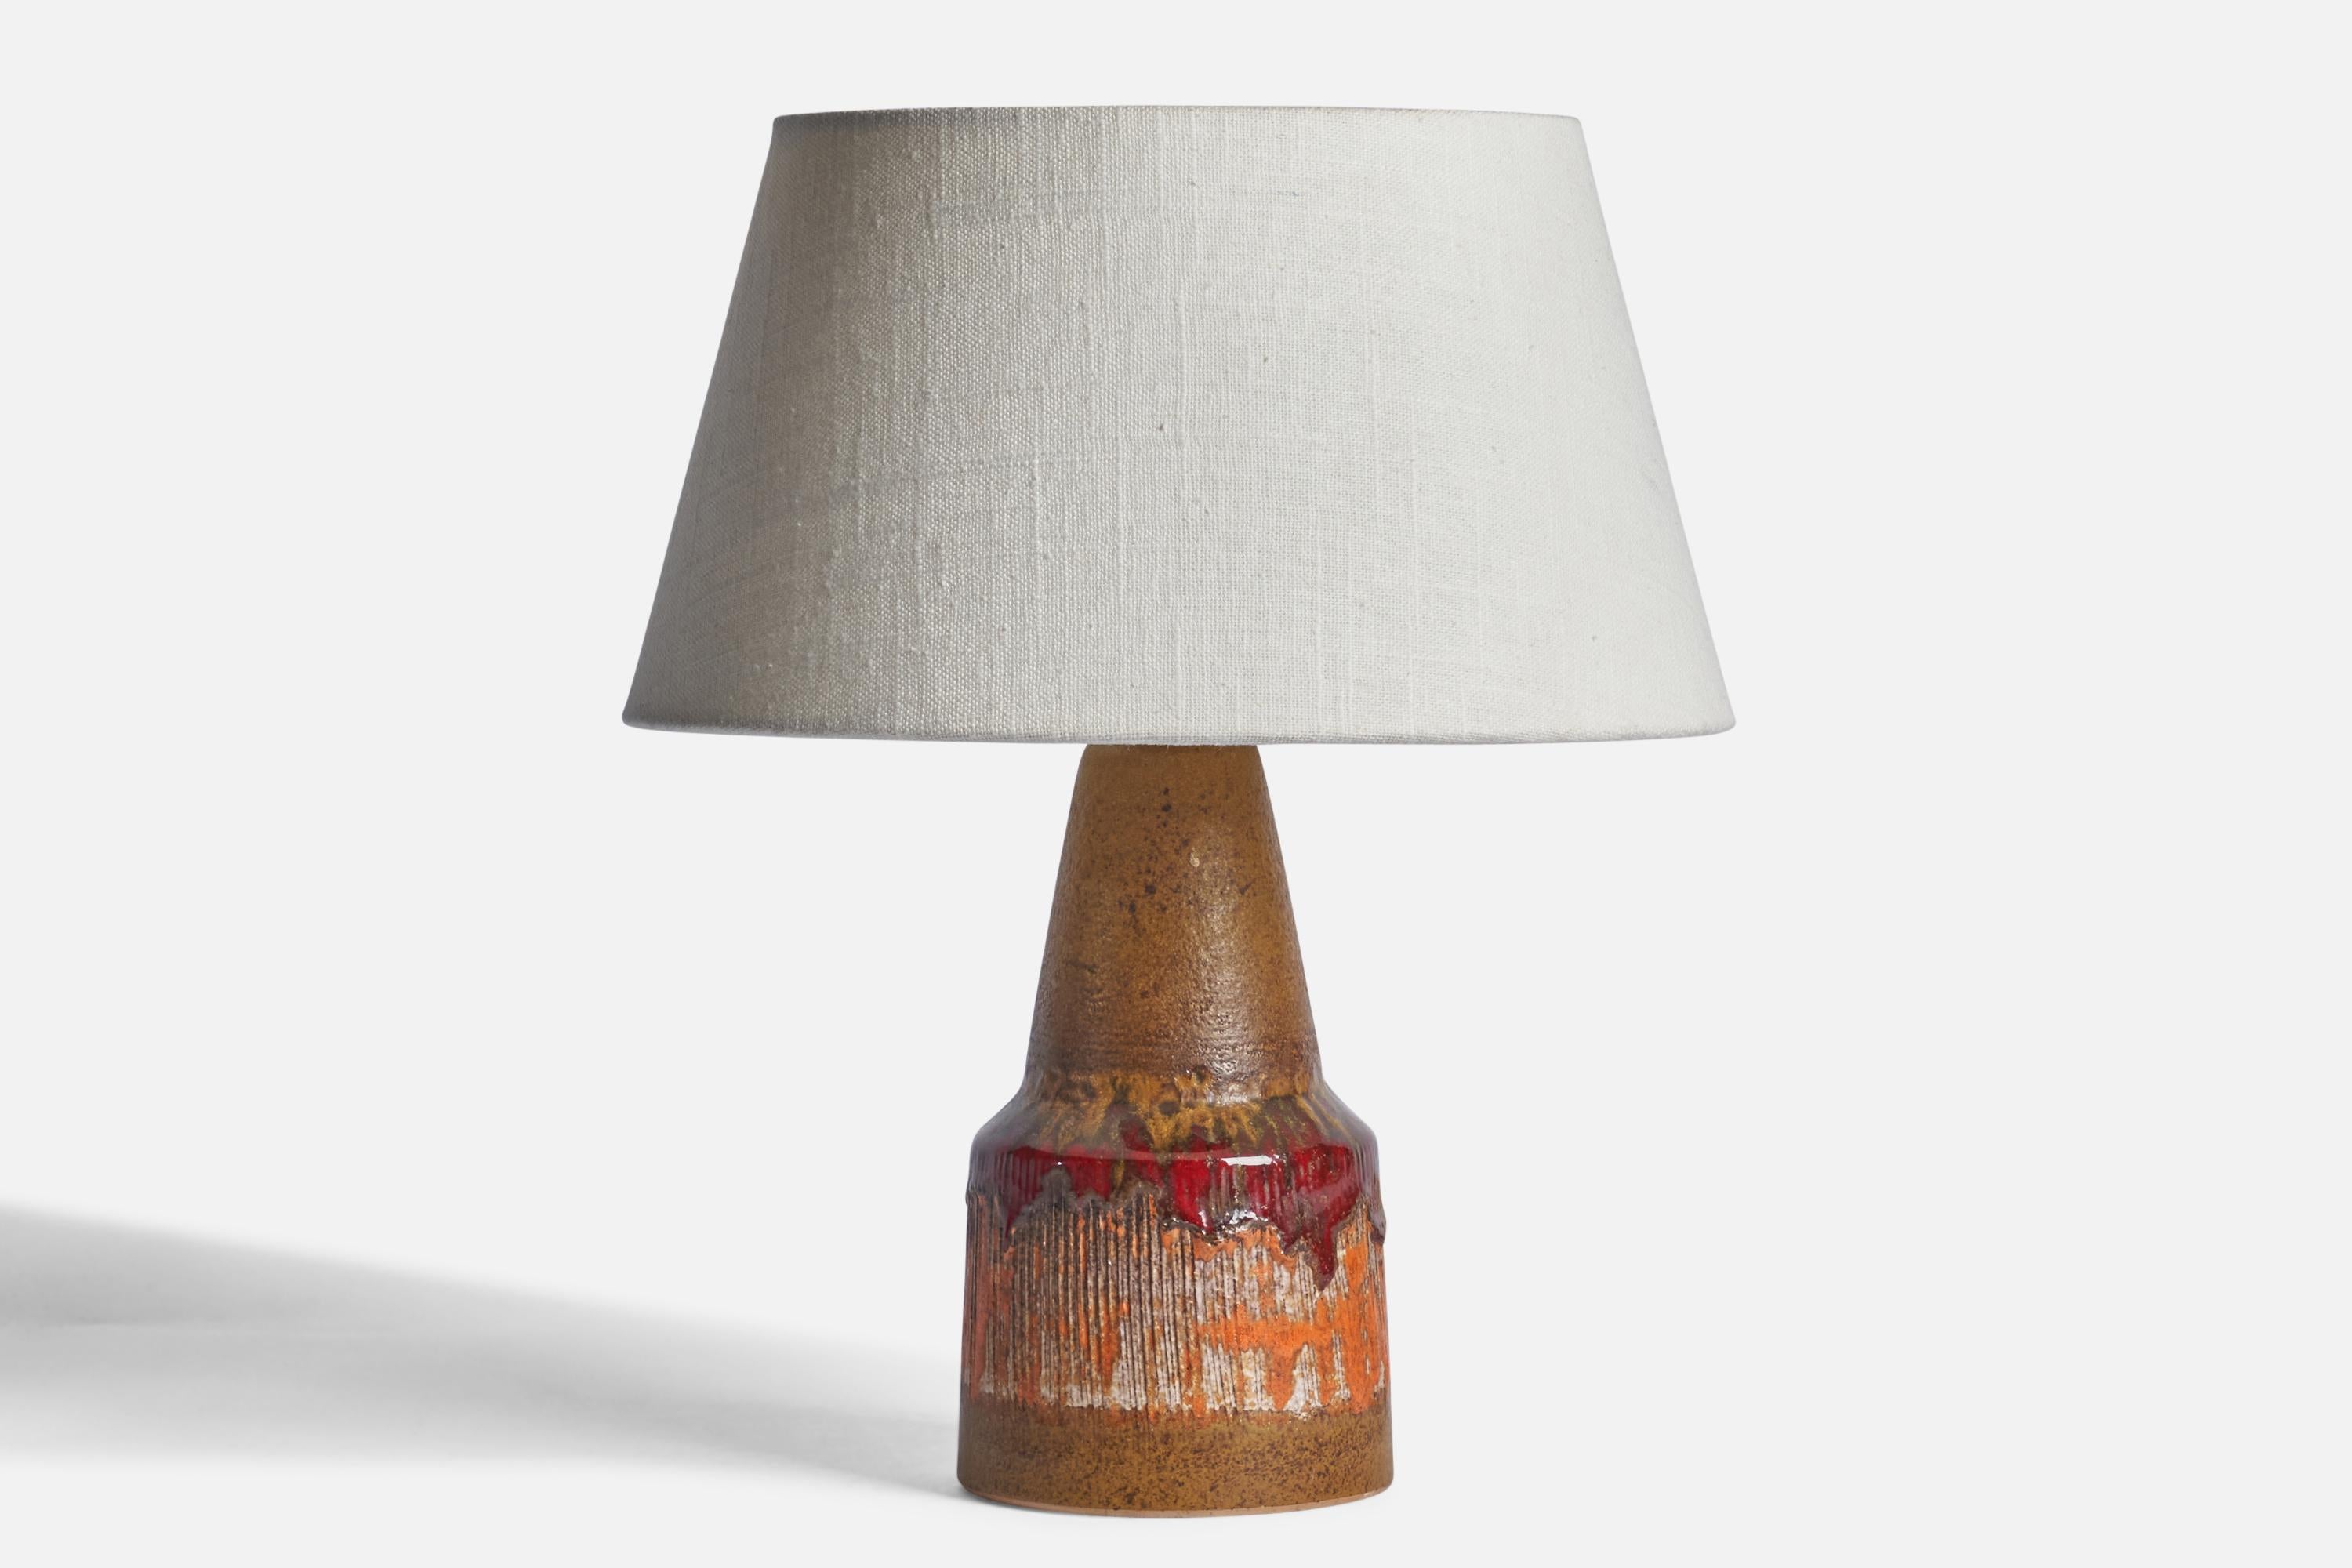 Tischlampe aus braunem, rotem und orangefarbenem Steingut, entworfen und hergestellt von Tilgmans Keramik, Schweden, ca. 1960er Jahre.

Abmessungen der Lampe (Zoll): 9,25